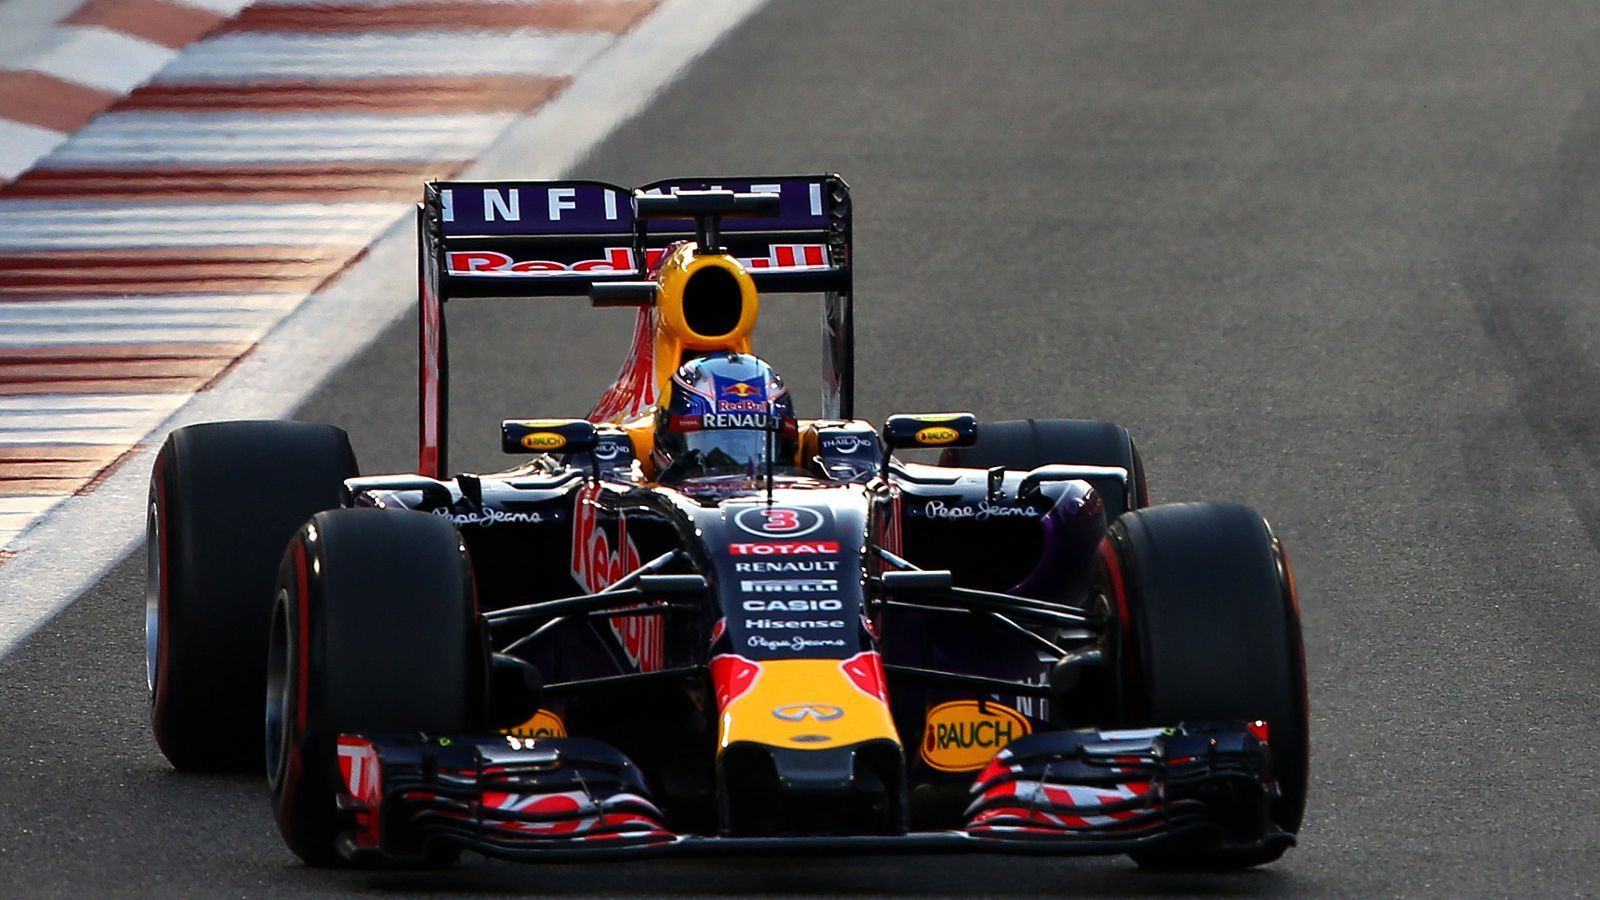 
                <strong>Red Bull RB11 (2015)</strong><br>
                Motor: Renault Energy F1 2015Siege: -Punkte: 187WM-Rang: 4Fahrer: Daniel Ricciardo & Daniil Kvyat
              